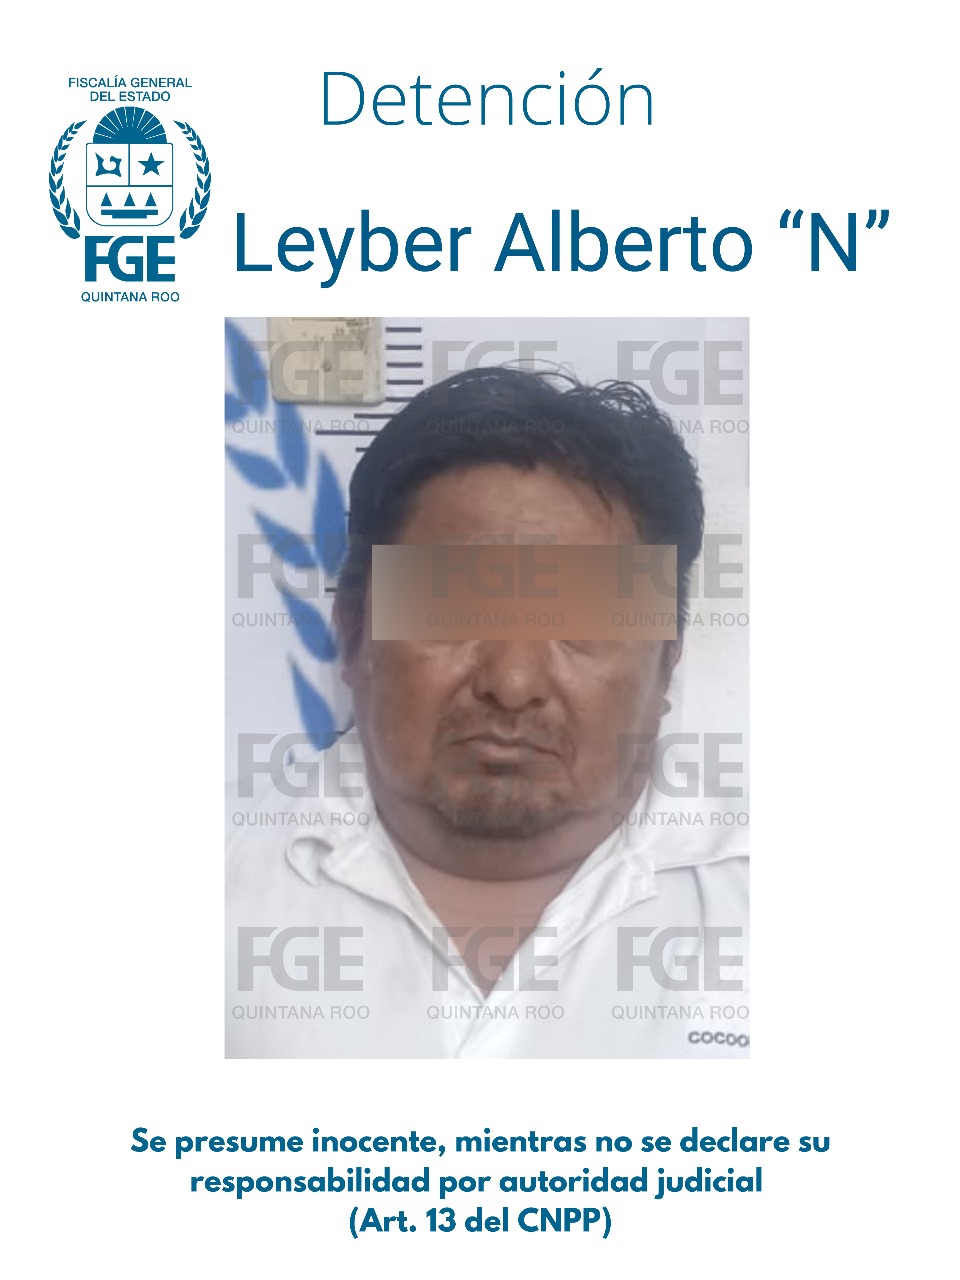 Leyber Alberto “N”, presunto violador de una adolescente en Isla Mujeres fue detenido por elementos de la FGE